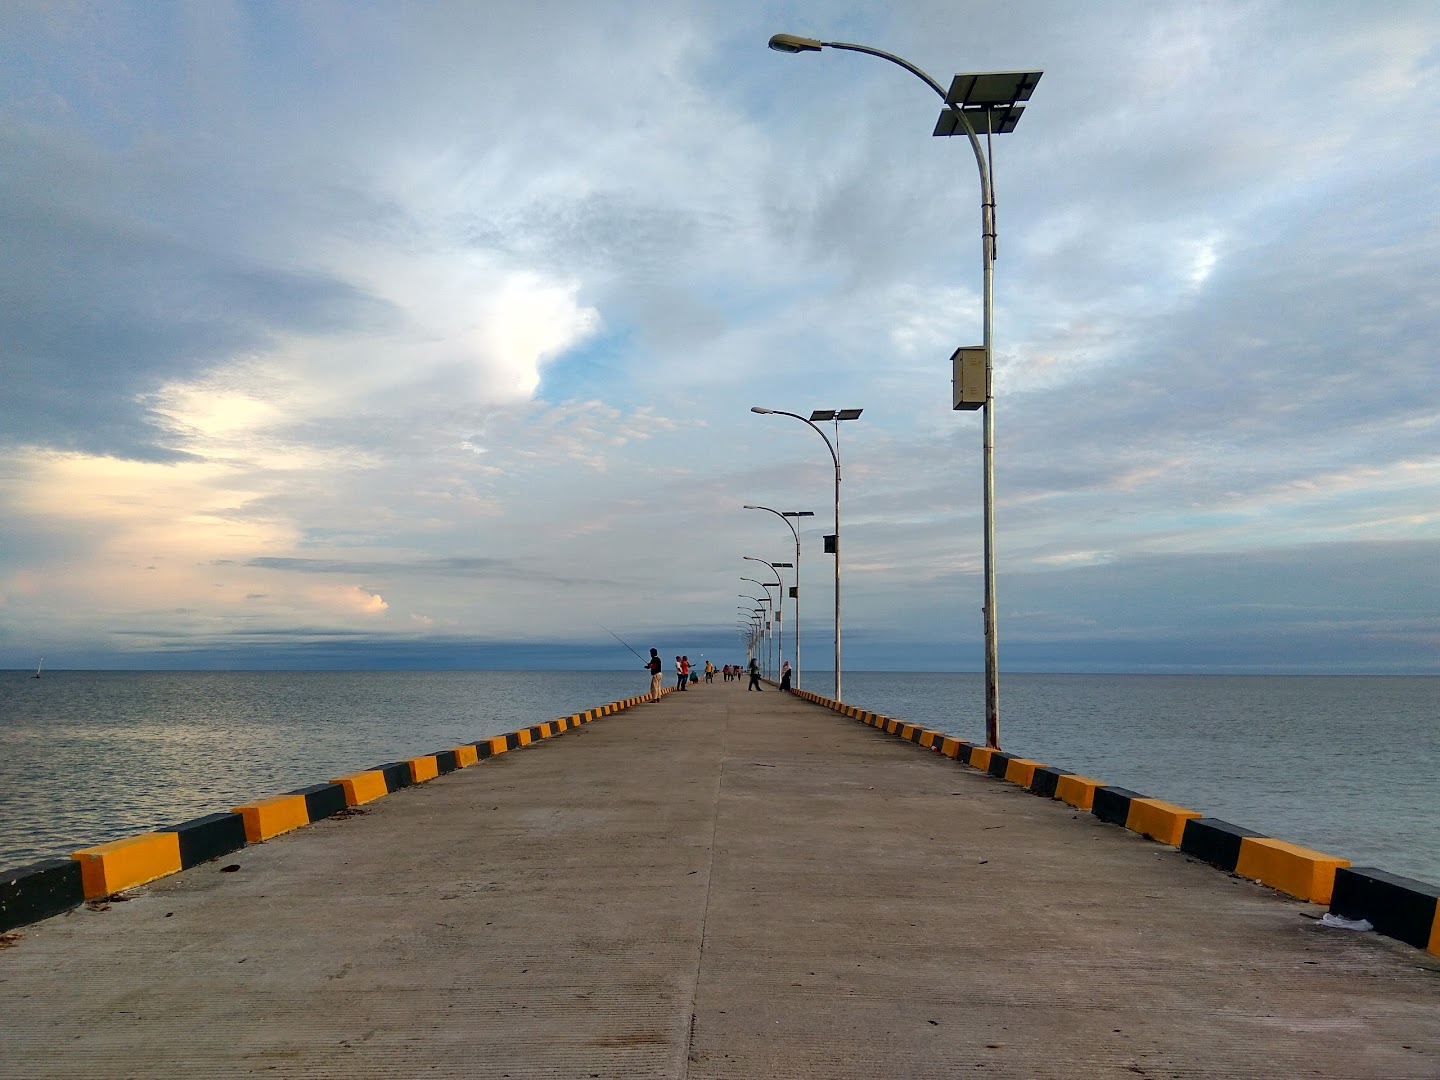 Pelabuhan Laut Singkil Photo